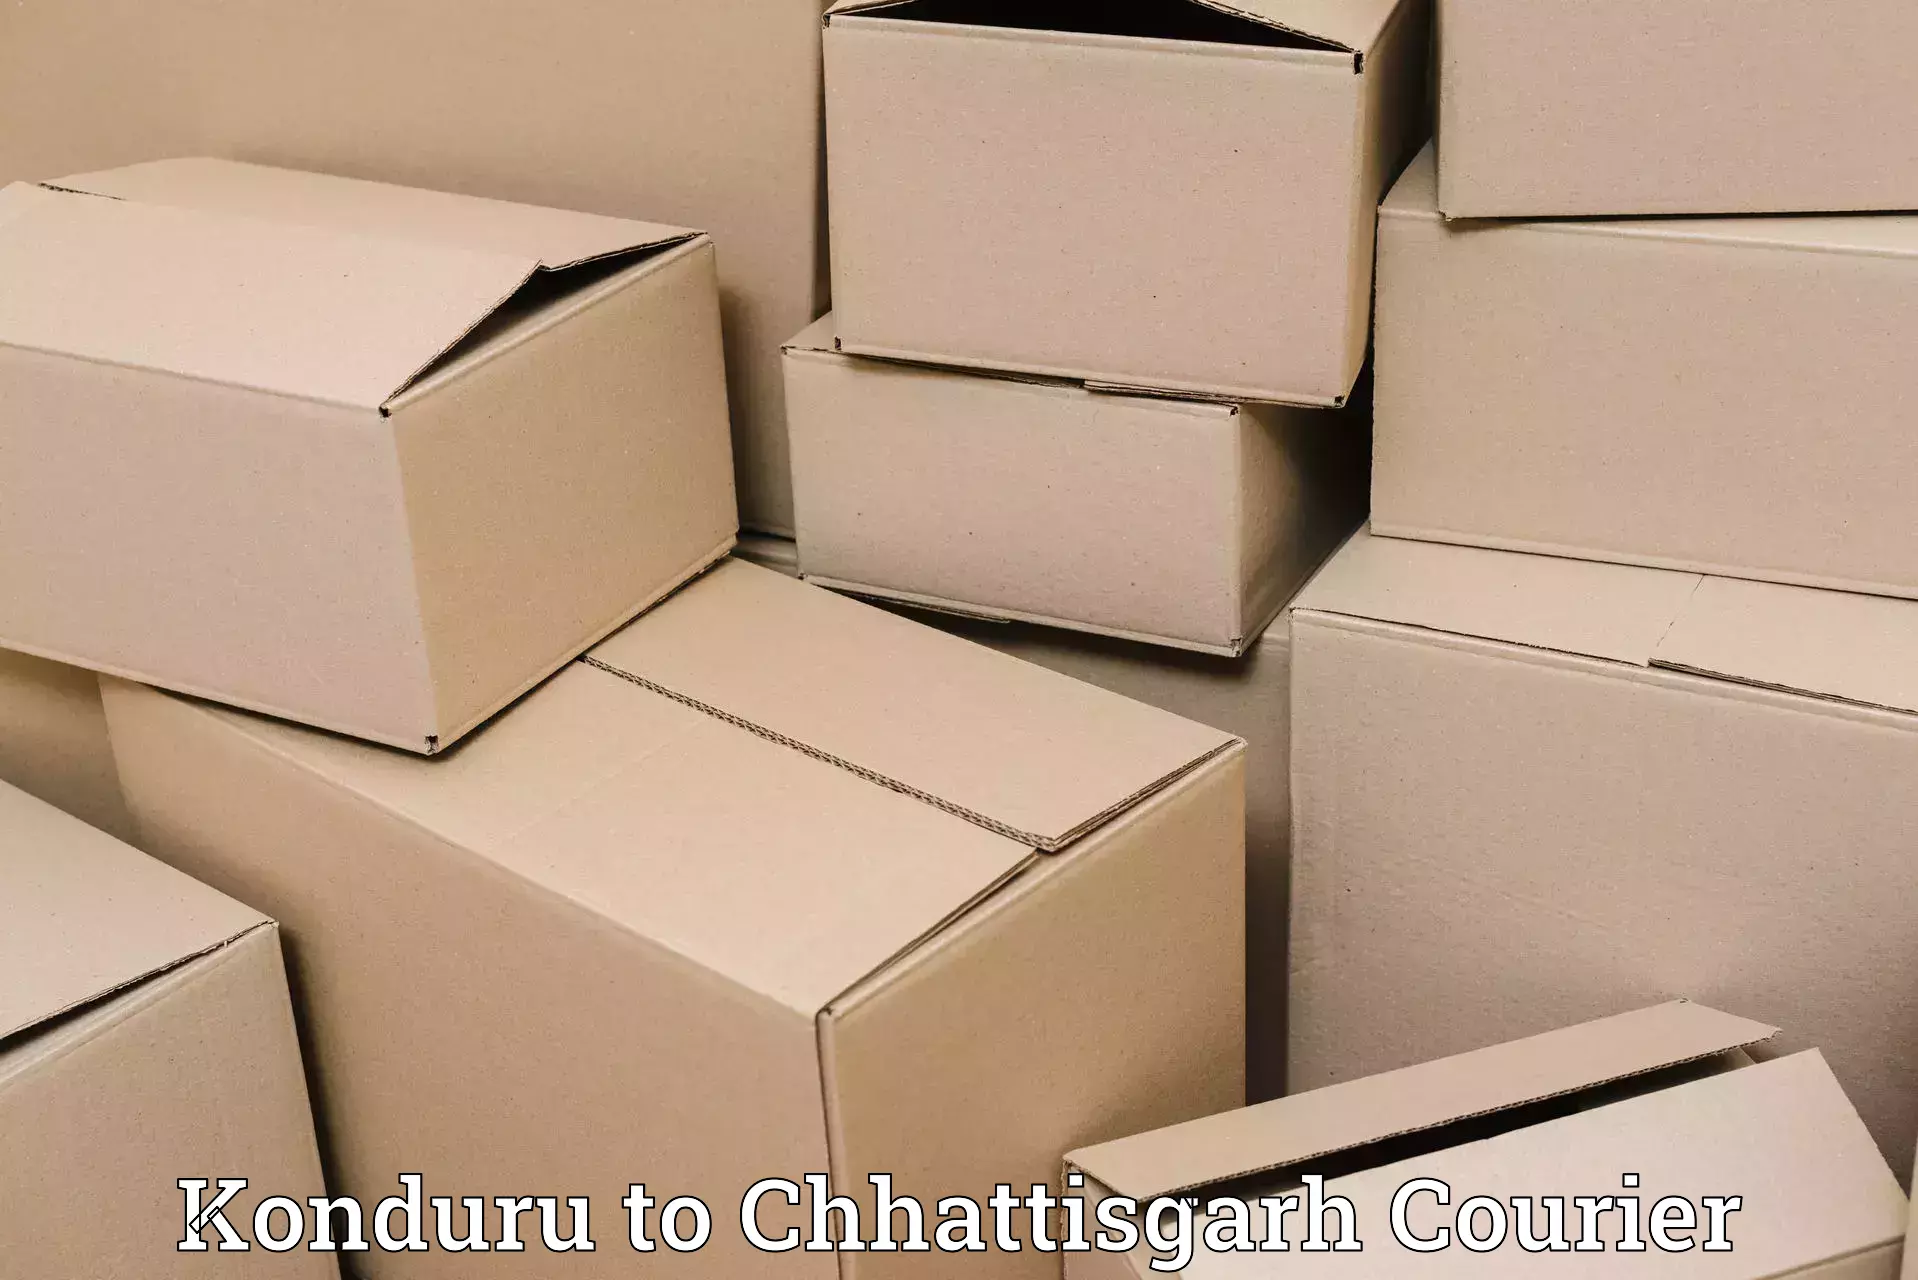 Specialized courier services Konduru to Sakti